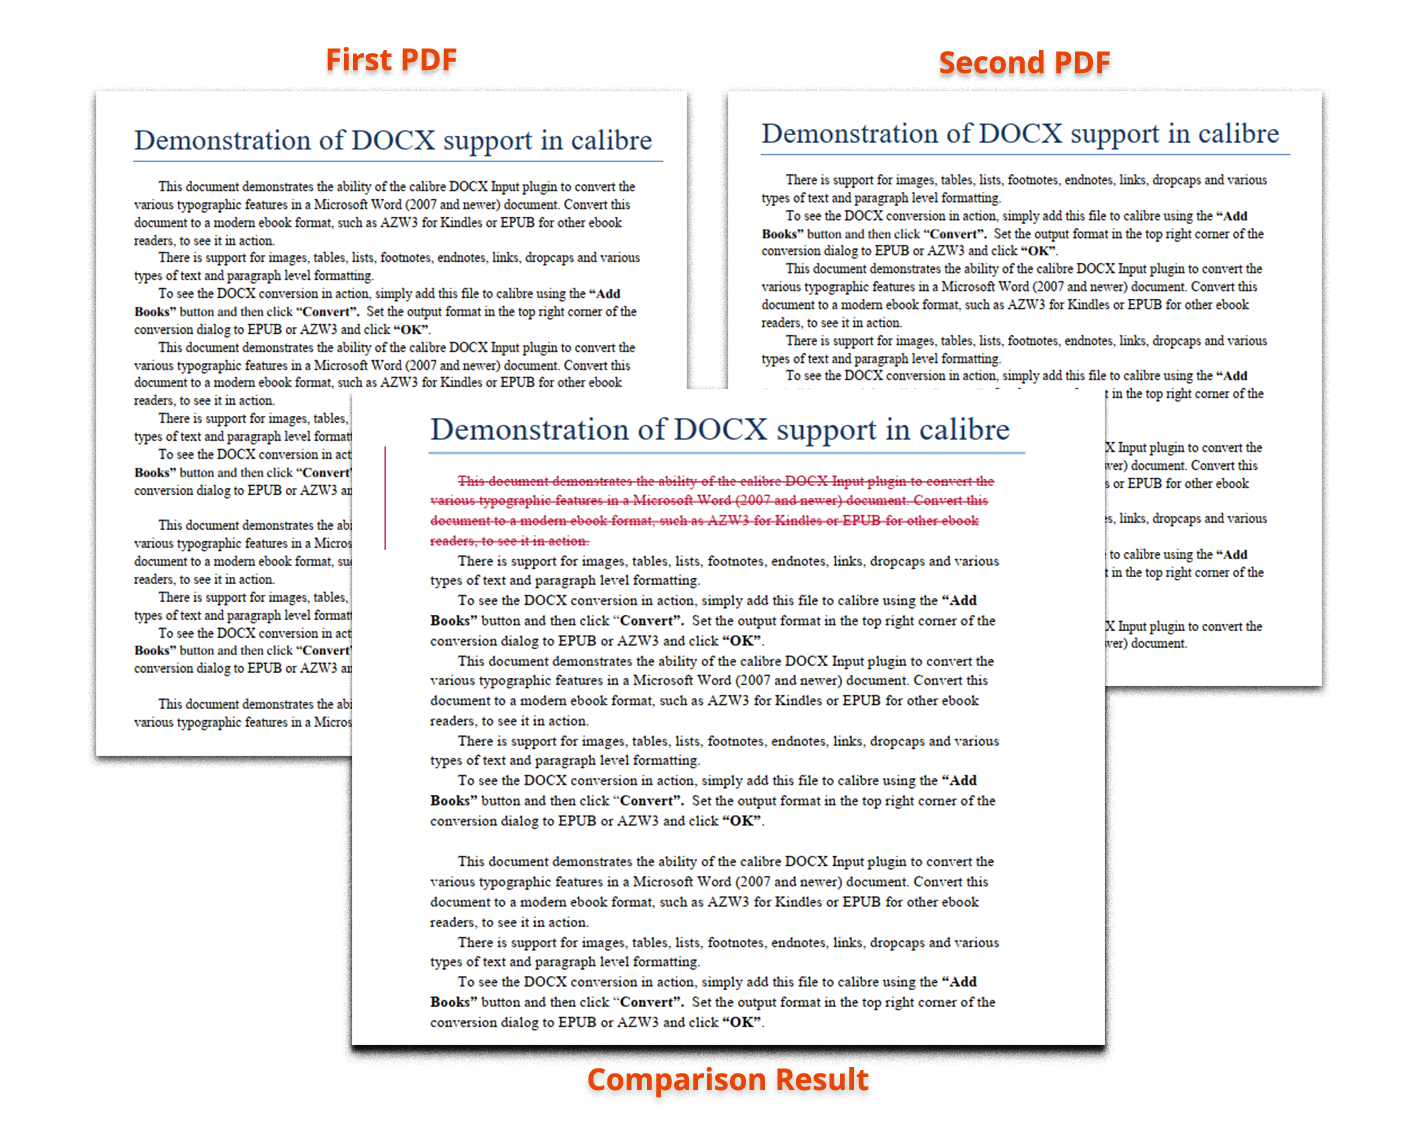 Comparison of PDF Files